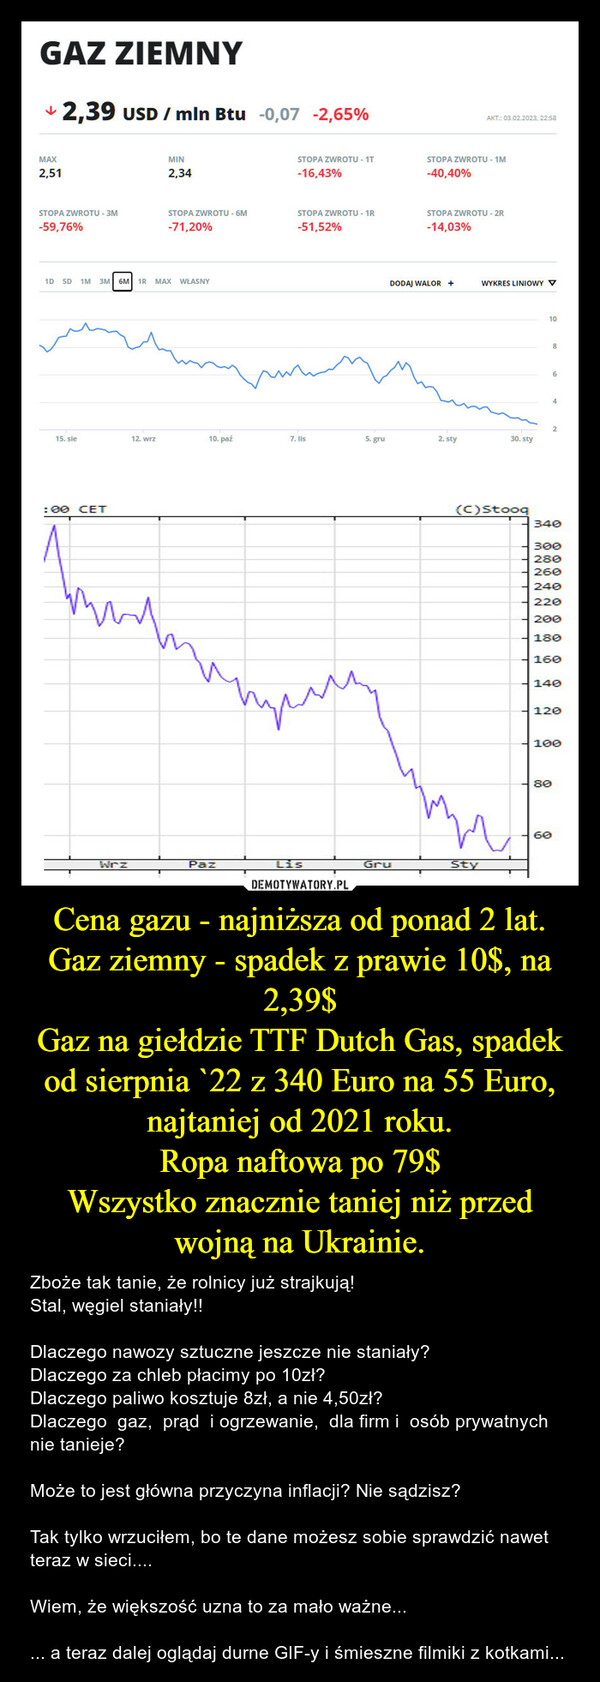 Cena gazu - najniższa od ponad 2 lat.Gaz ziemny - spadek z prawie 10$, na 2,39$Gaz na giełdzie TTF Dutch Gas, spadek od sierpnia `22 z 340 Euro na 55 Euro, najtaniej od 2021 roku.Ropa naftowa po 79$Wszystko znacznie taniej niż przed wojną na Ukrainie. – Zboże tak tanie, że rolnicy już strajkują!Stal, węgiel staniały!! Dlaczego nawozy sztuczne jeszcze nie staniały?Dlaczego za chleb płacimy po 10zł?Dlaczego paliwo kosztuje 8zł, a nie 4,50zł?Dlaczego  gaz,  prąd  i ogrzewanie,  dla firm i  osób prywatnych nie tanieje?Może to jest główna przyczyna inflacji? Nie sądzisz?Tak tylko wrzuciłem, bo te dane możesz sobie sprawdzić nawet teraz w sieci....Wiem, że większość uzna to za mało ważne...... a teraz dalej oglądaj durne GIF-y i śmieszne filmiki z kotkami... 